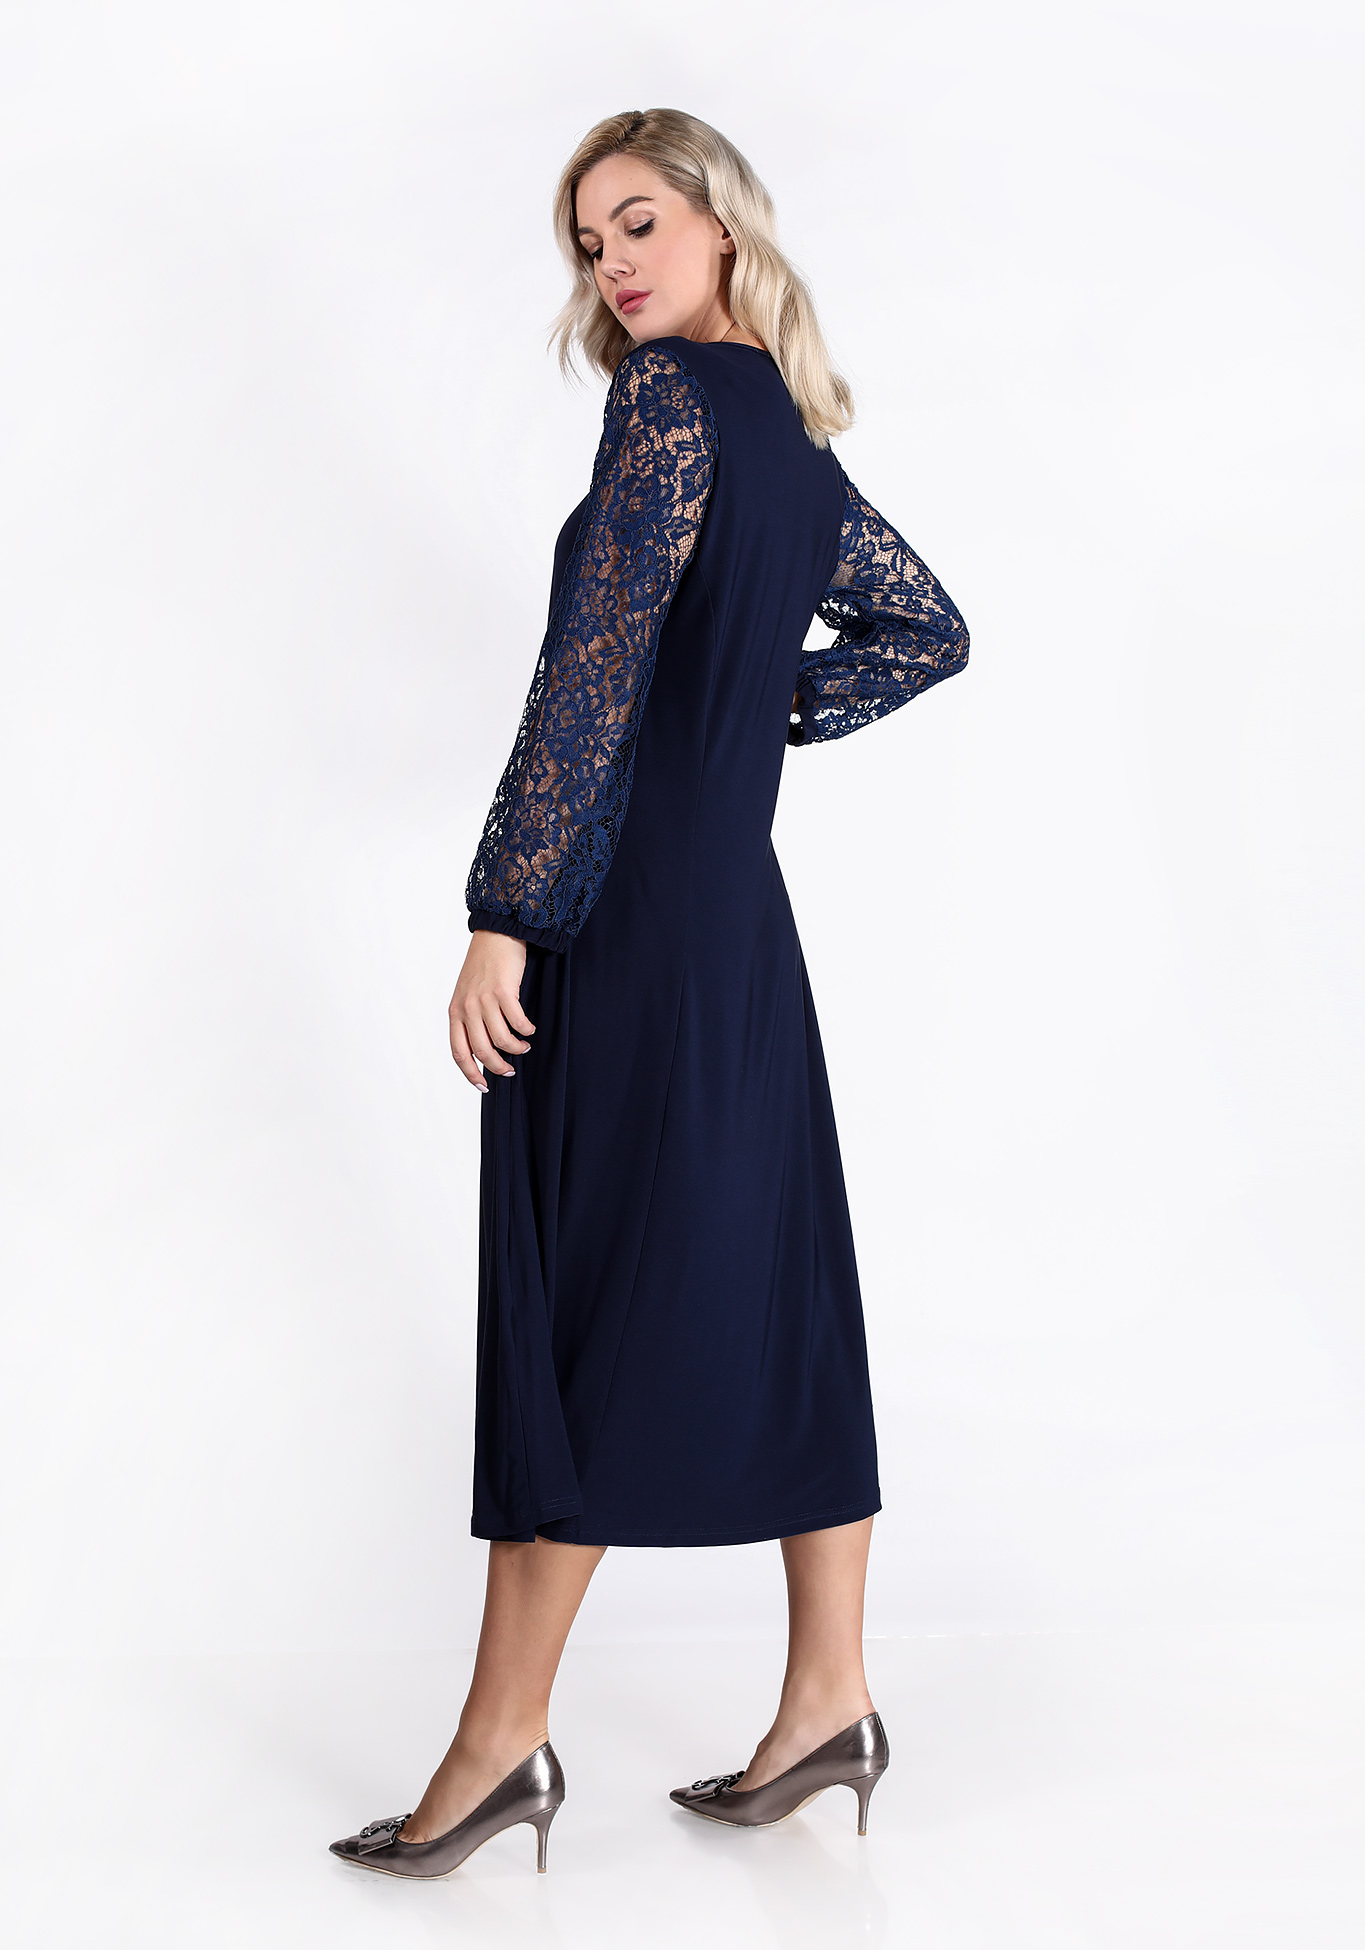 Платье «Прекрасная женщина» ZORY, размер 50, цвет темно-синий - фото 2